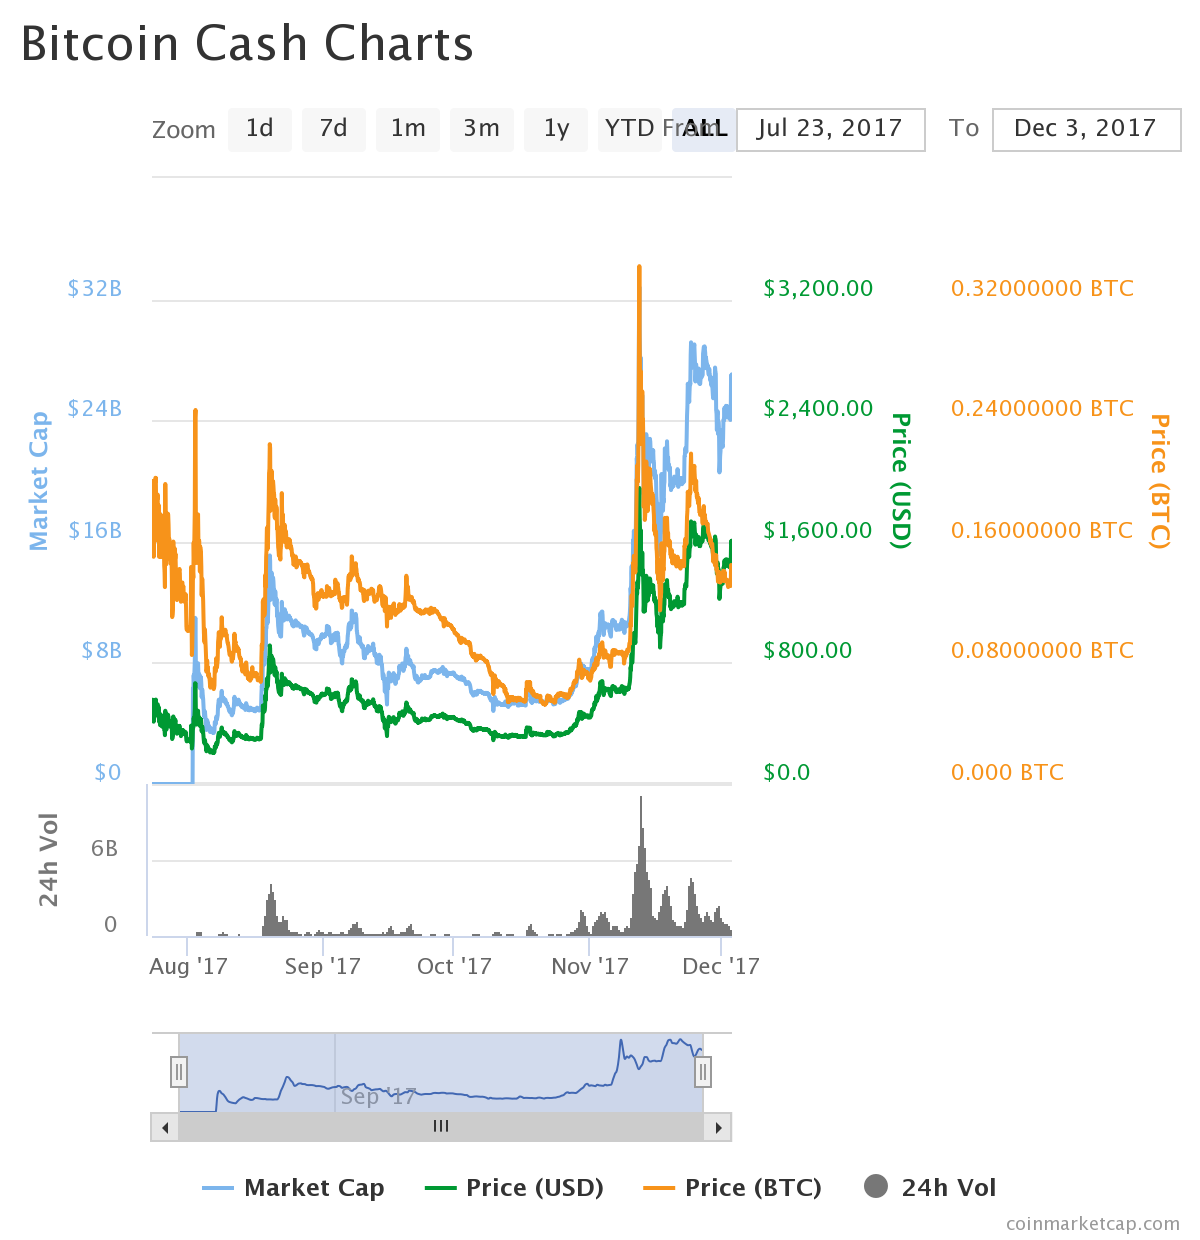 bitcoin cash cjarts